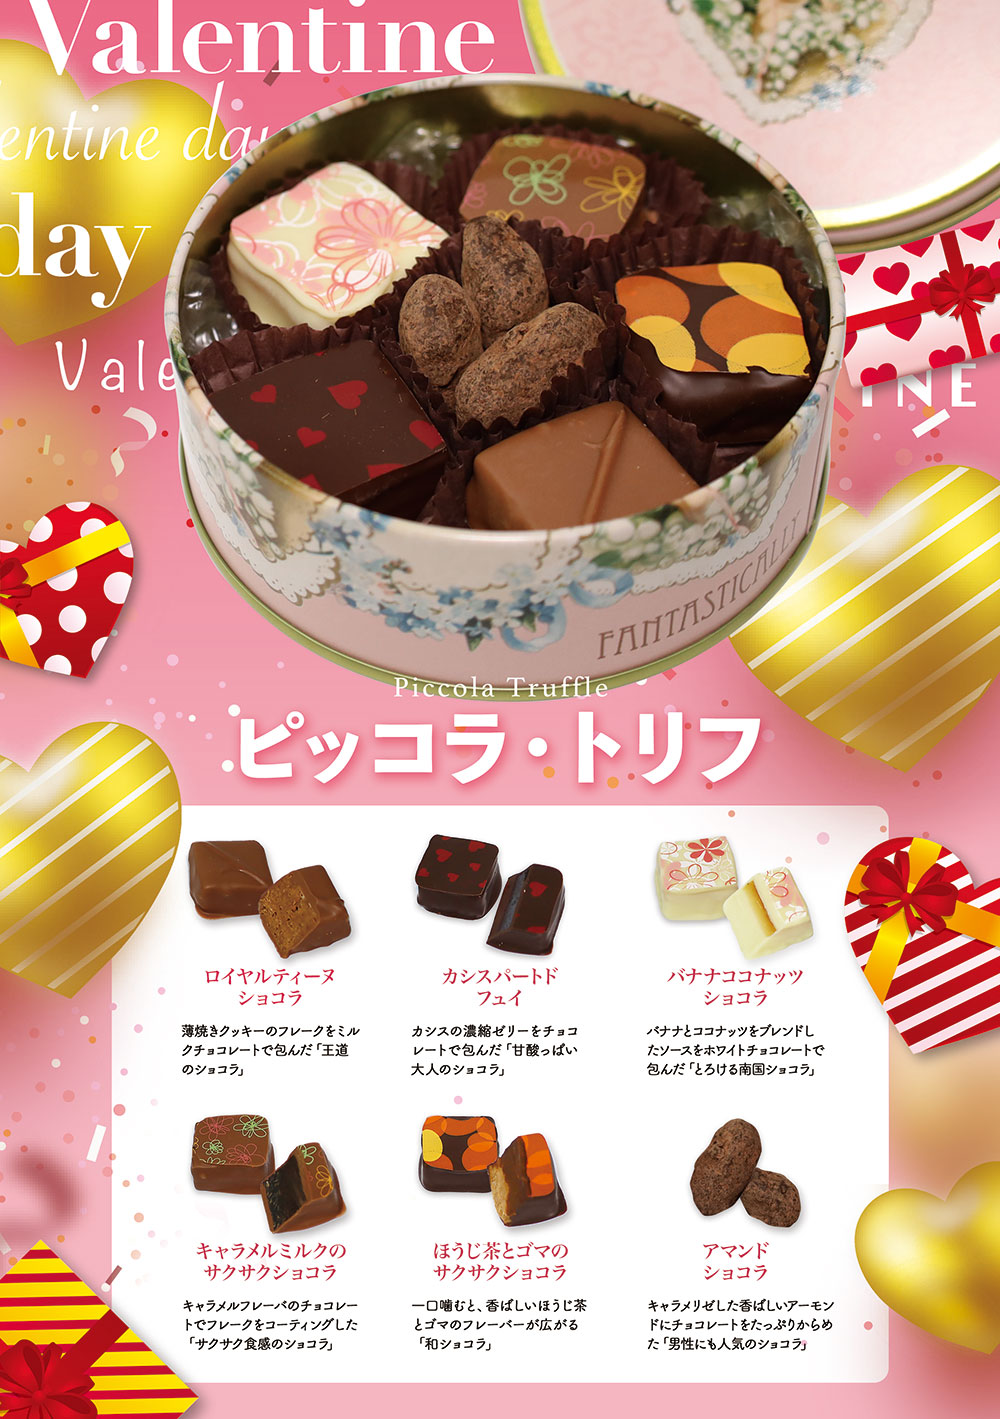 バレンタインチョコレートフェア21 豊橋市のおいしい洋菓子店 ケーキ アンジェリカ